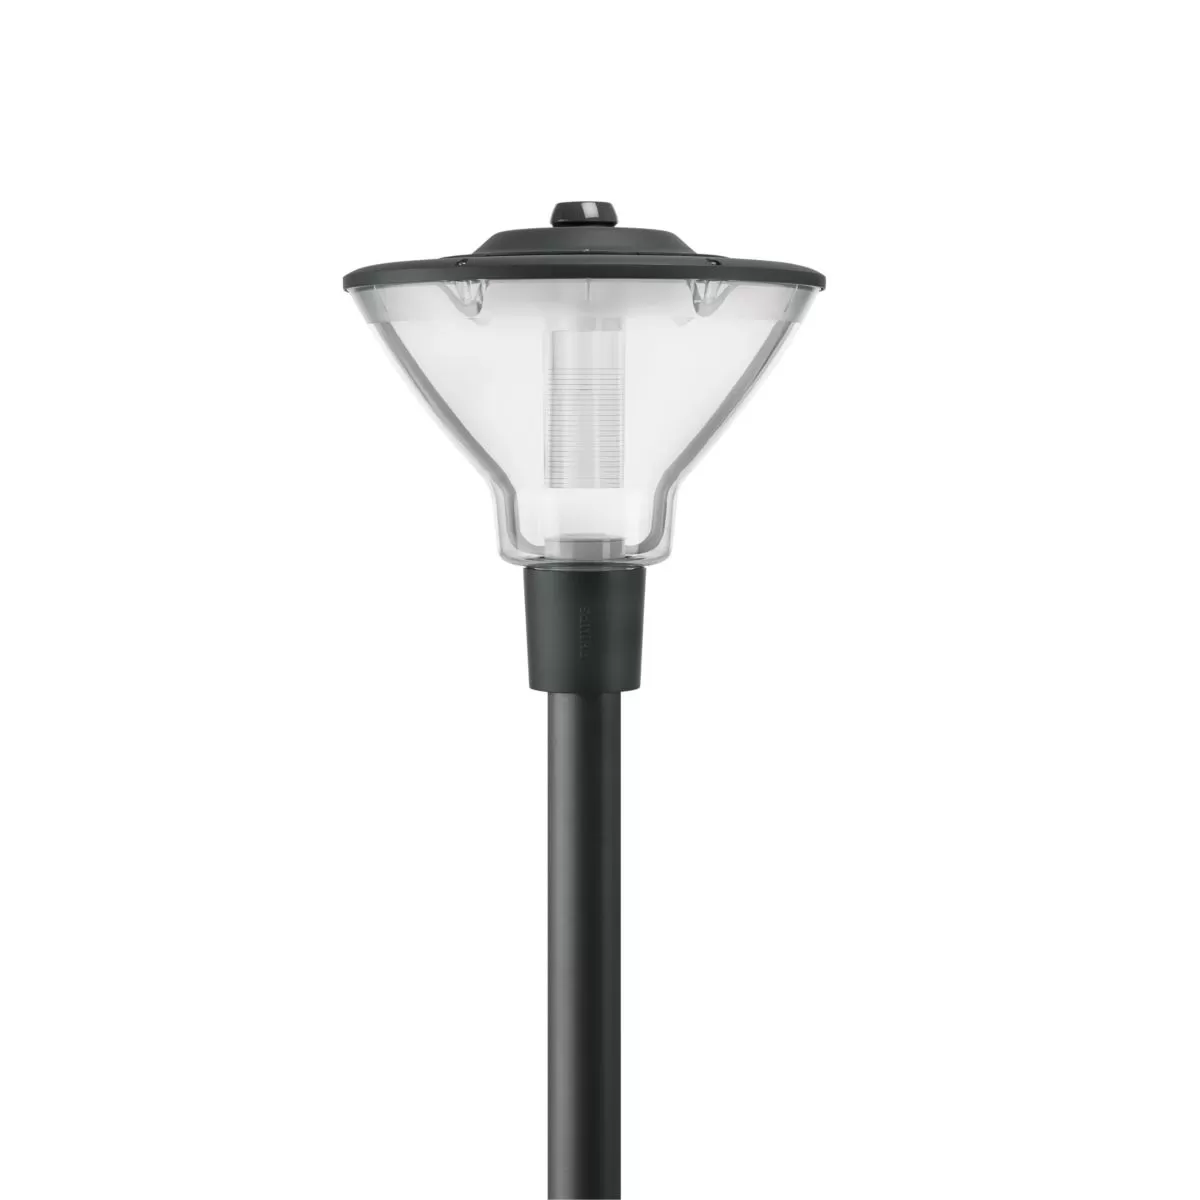 Signify CityCharm Cone - 15 x - ClearGuide 2500 lm - LED - 730 warm white - regelbar, siehe Spannung Steuersignal - 220 bis 240 V - 50 to 60 Hz - Schutzklasse 93927700